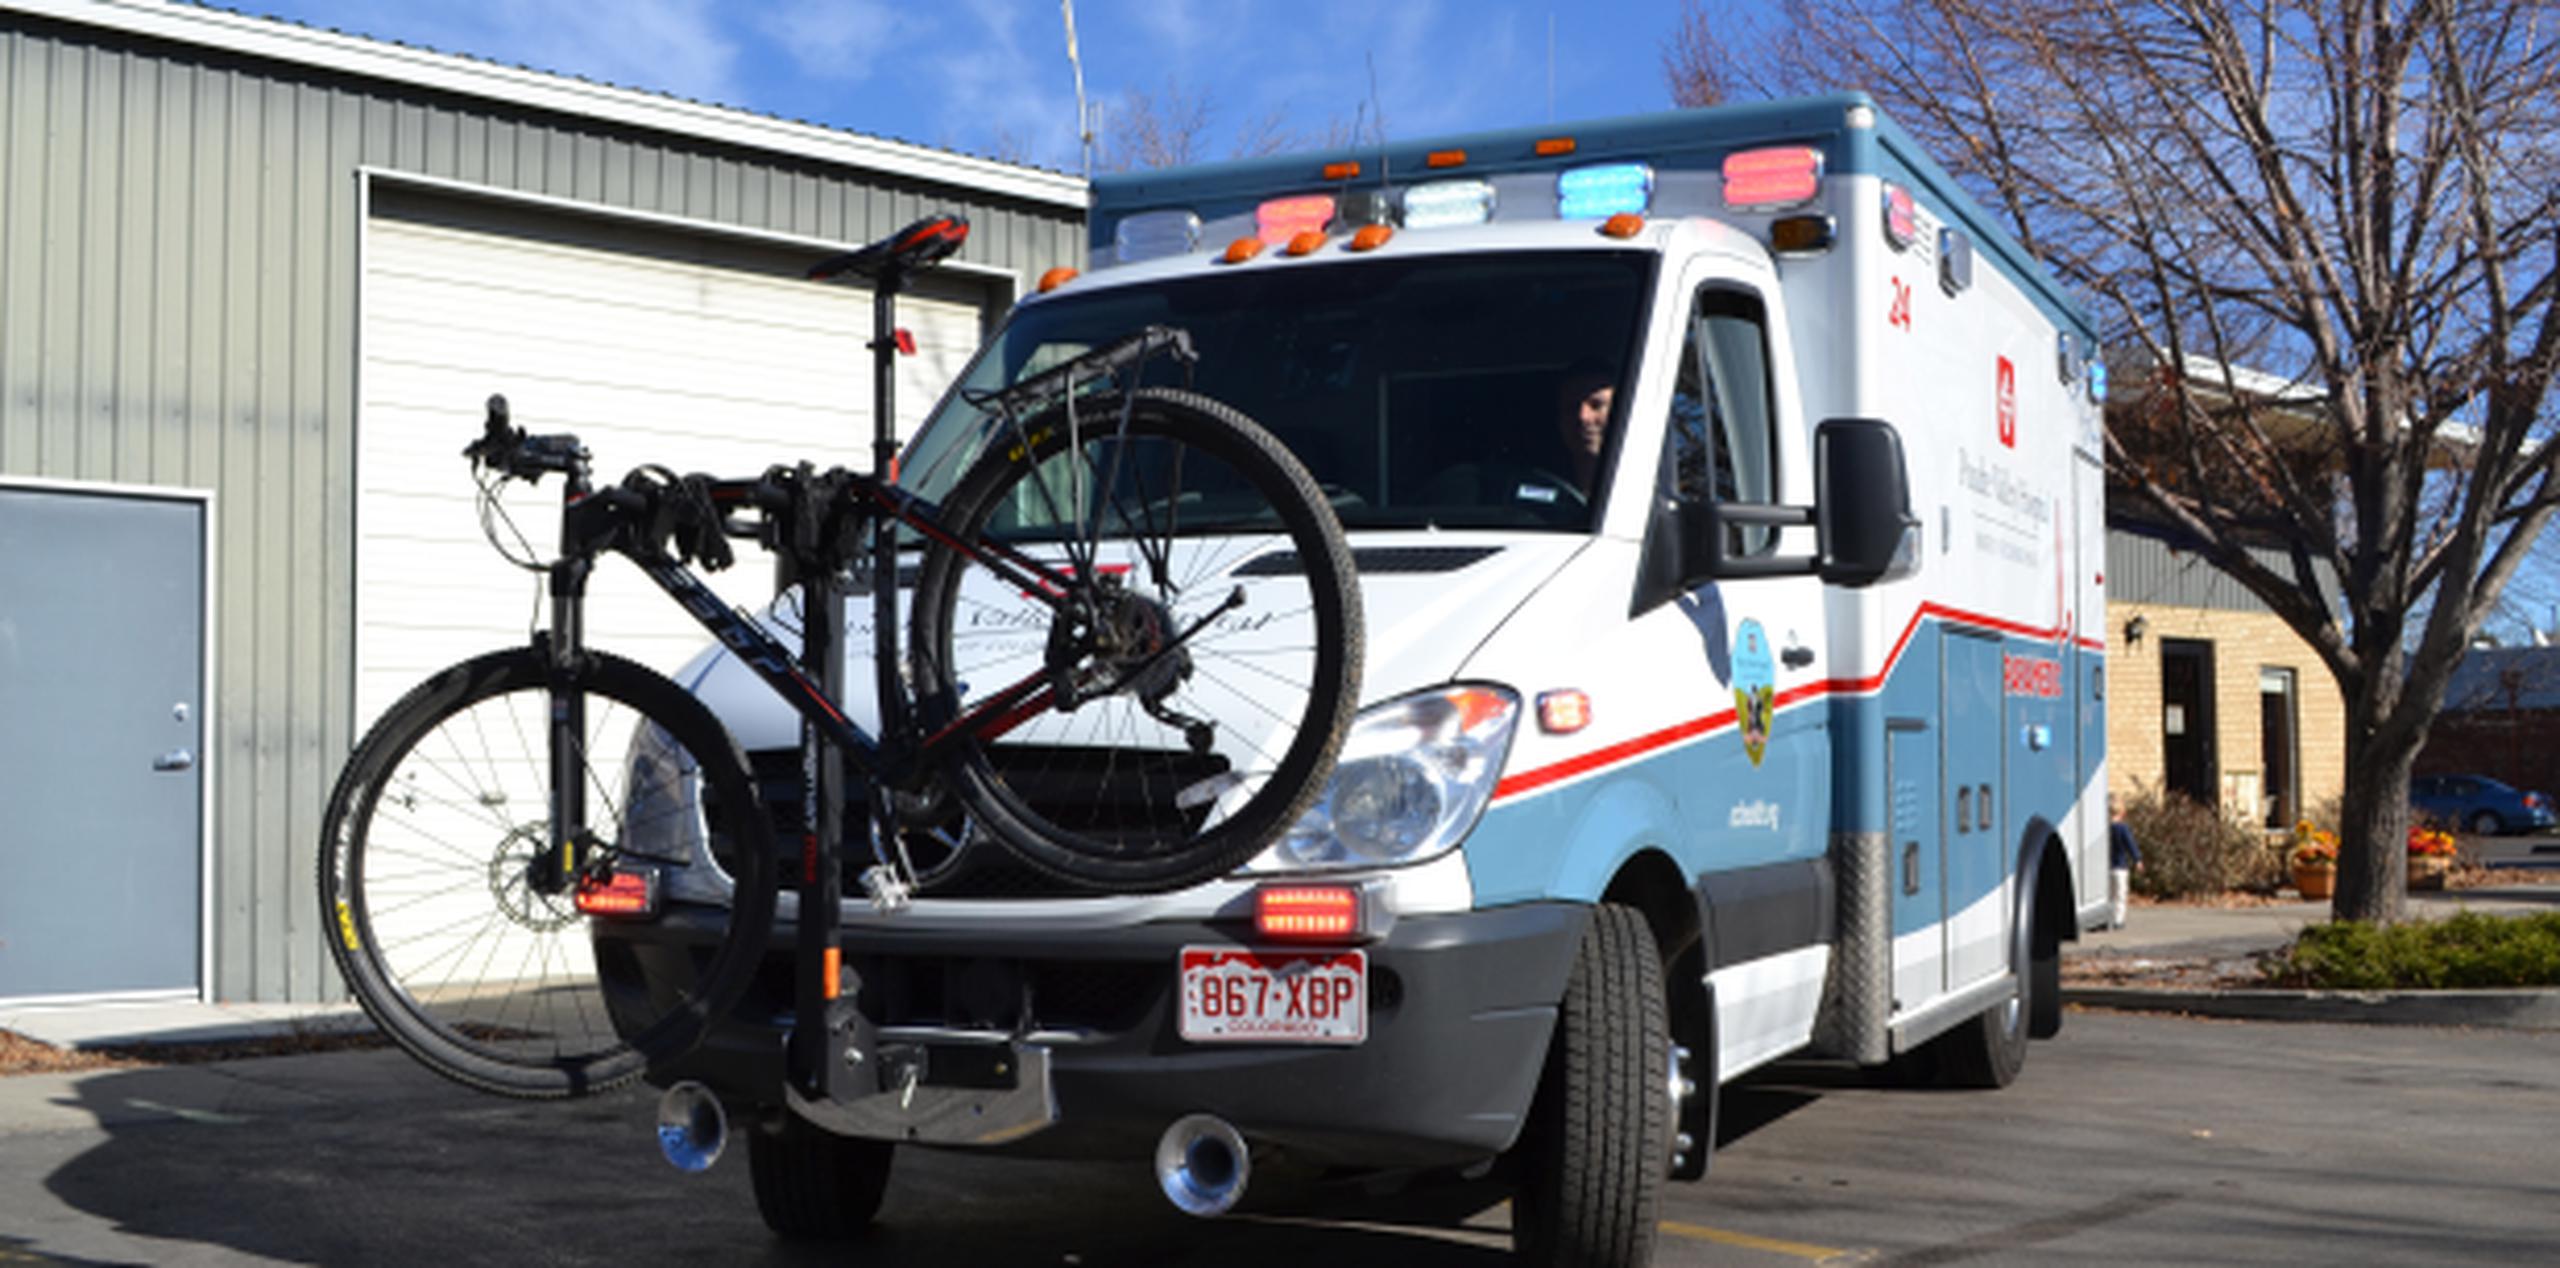 El servicio de ambulancias también enseña a niños de primaria cómo ir a la escuela en bicicleta con seguridad y cómo colocarse el casco debidamente. (Archivo)